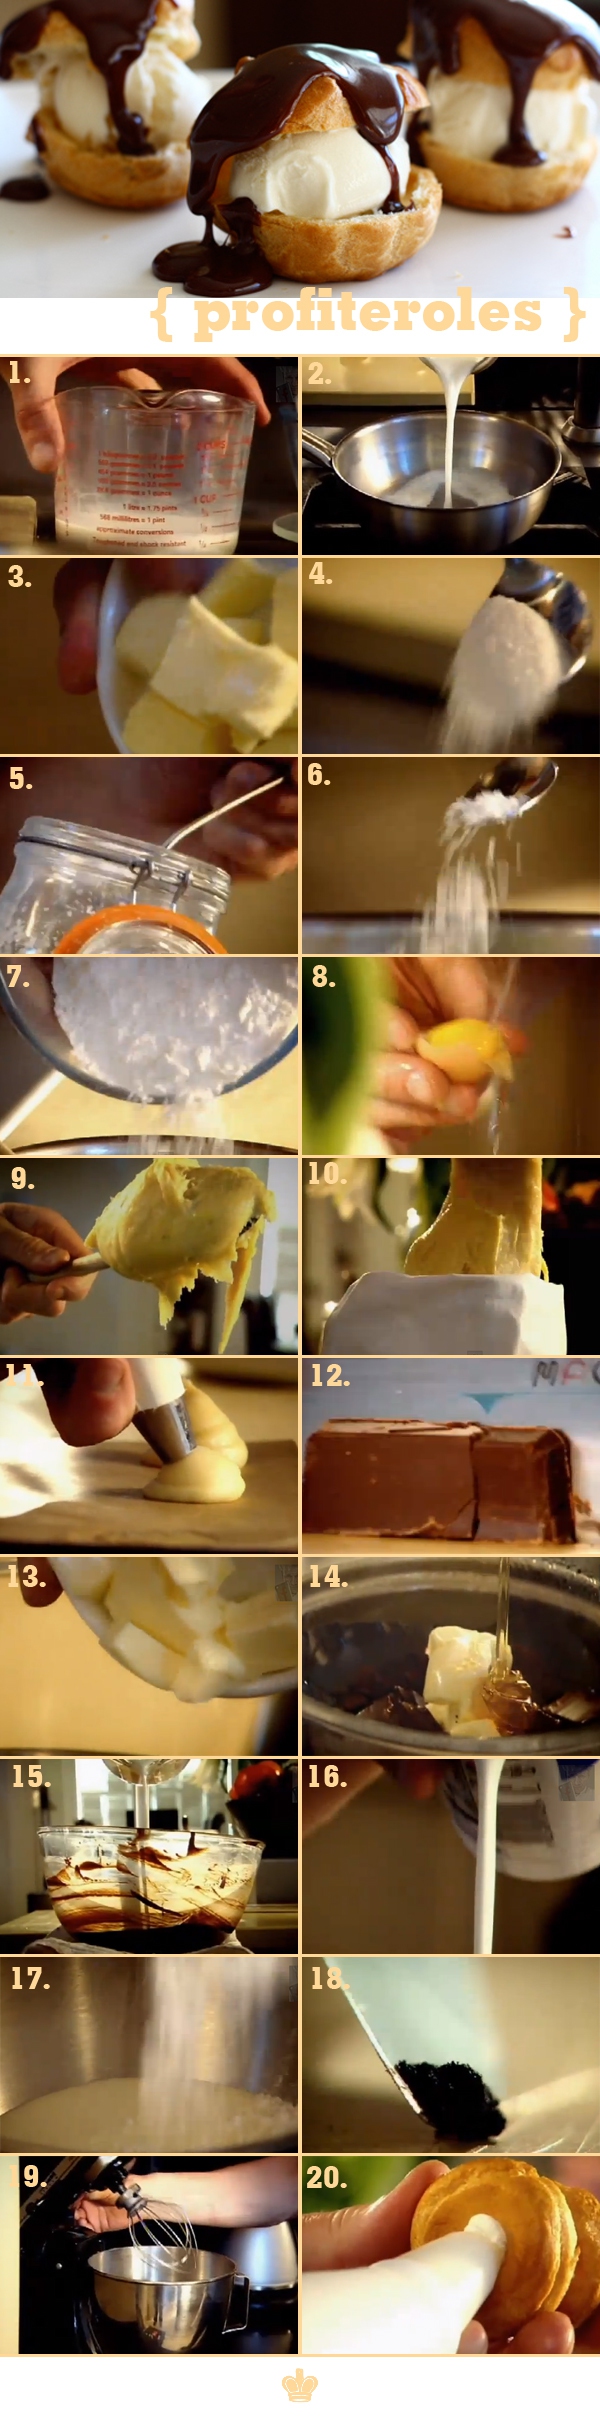 Bí quyết làm bánh su kem "hoàn hảo" của Gordon Ramsay 1